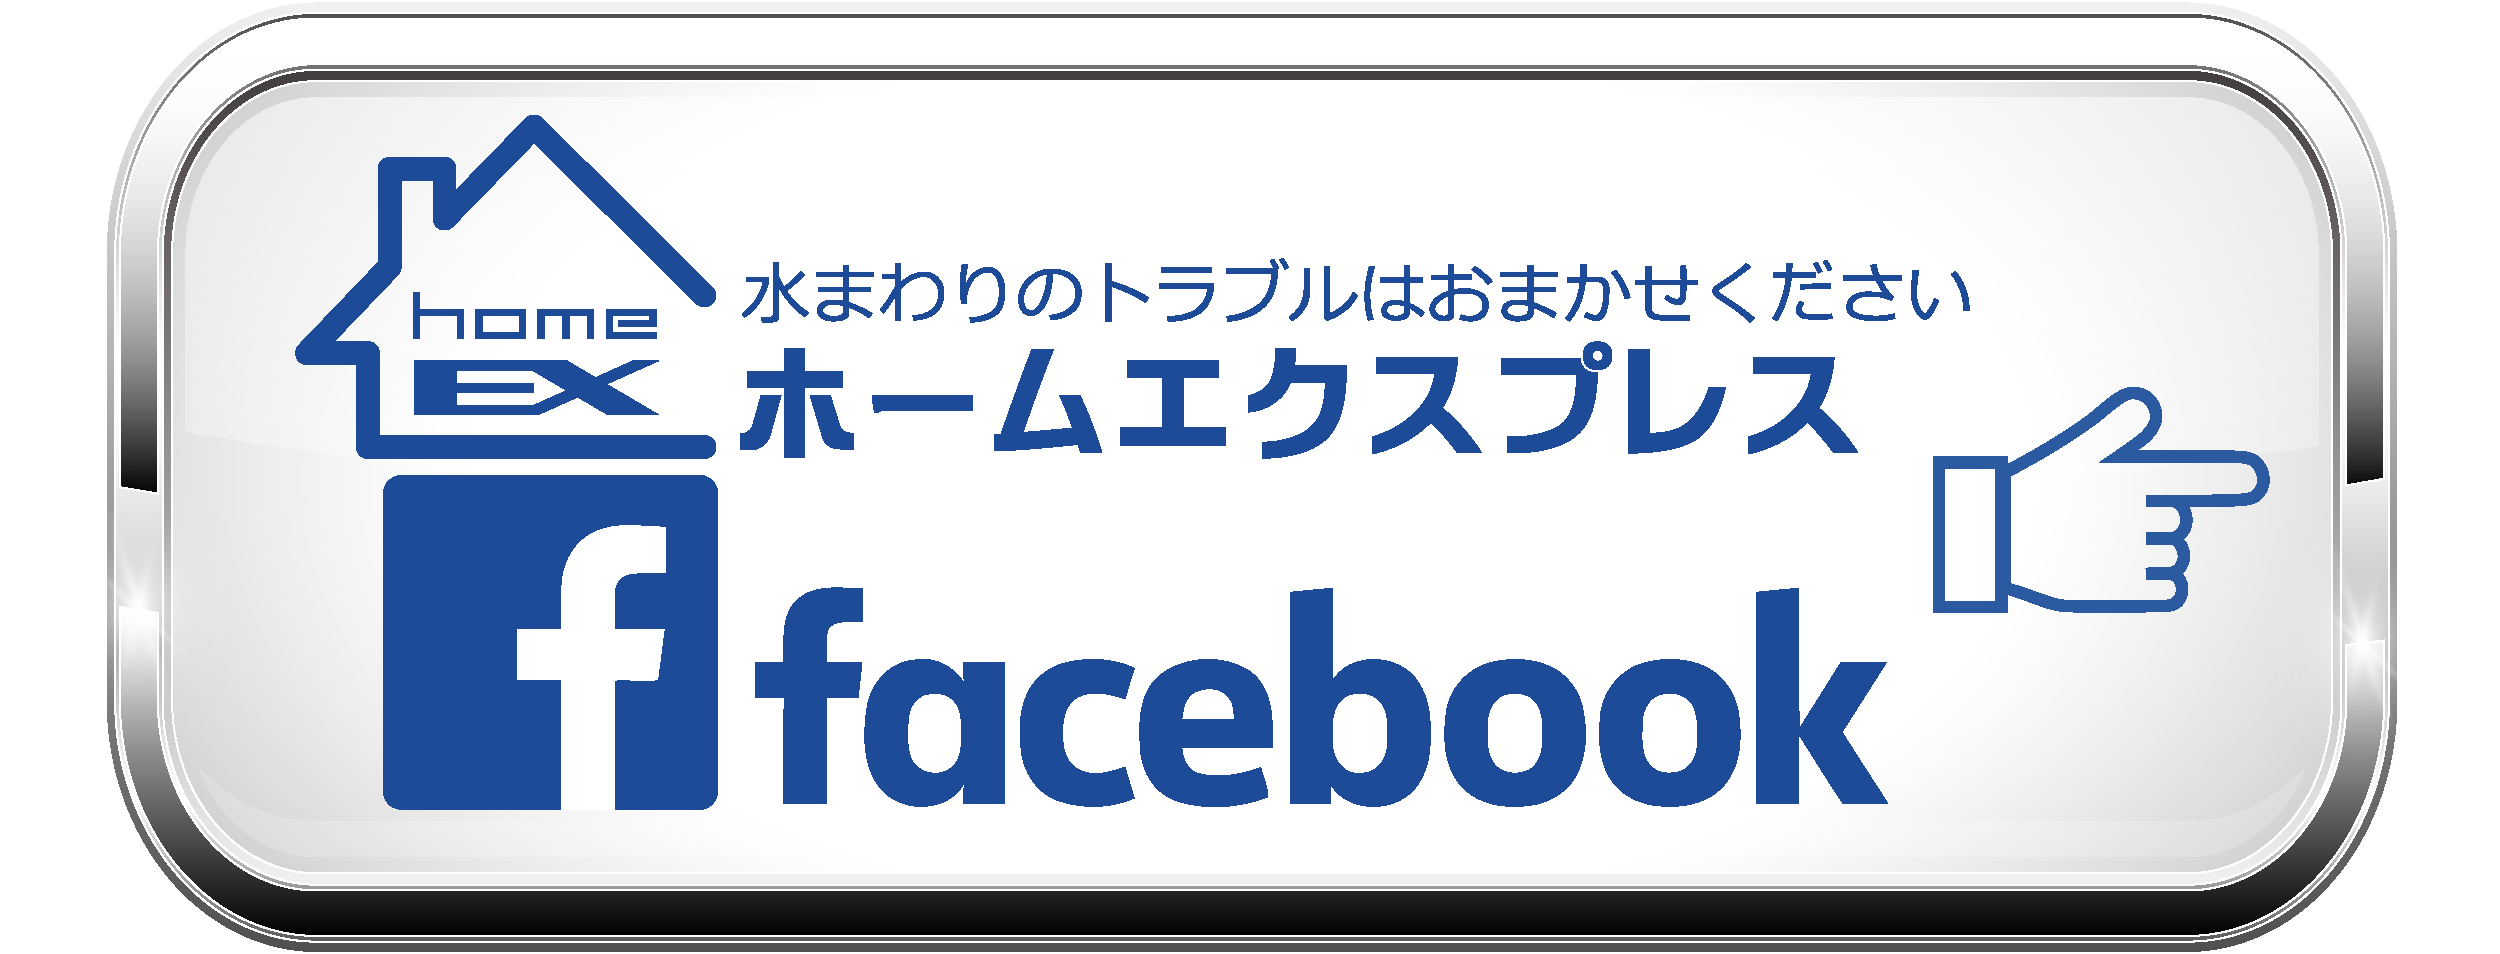 ホームエクスプレス・Facebookへのリンクボタン